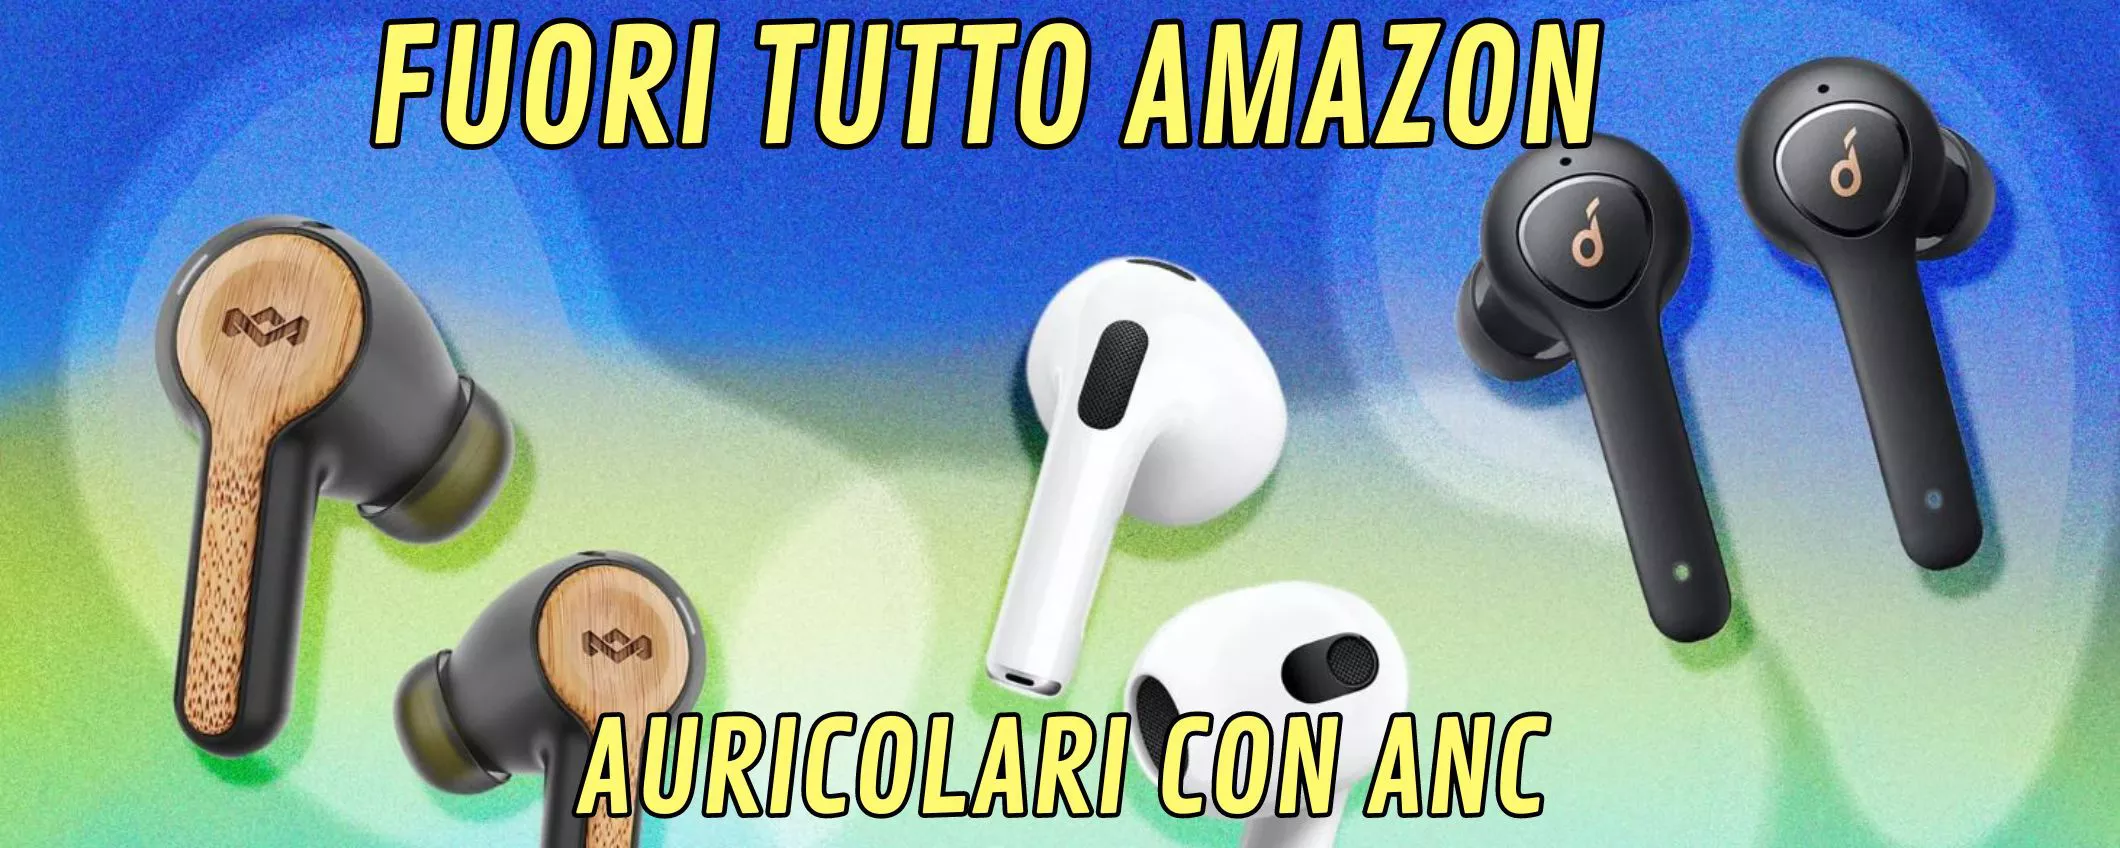 Auricolari Bluetooth con cancellazione del rumore: PREZZI PAZZI AMAZON!